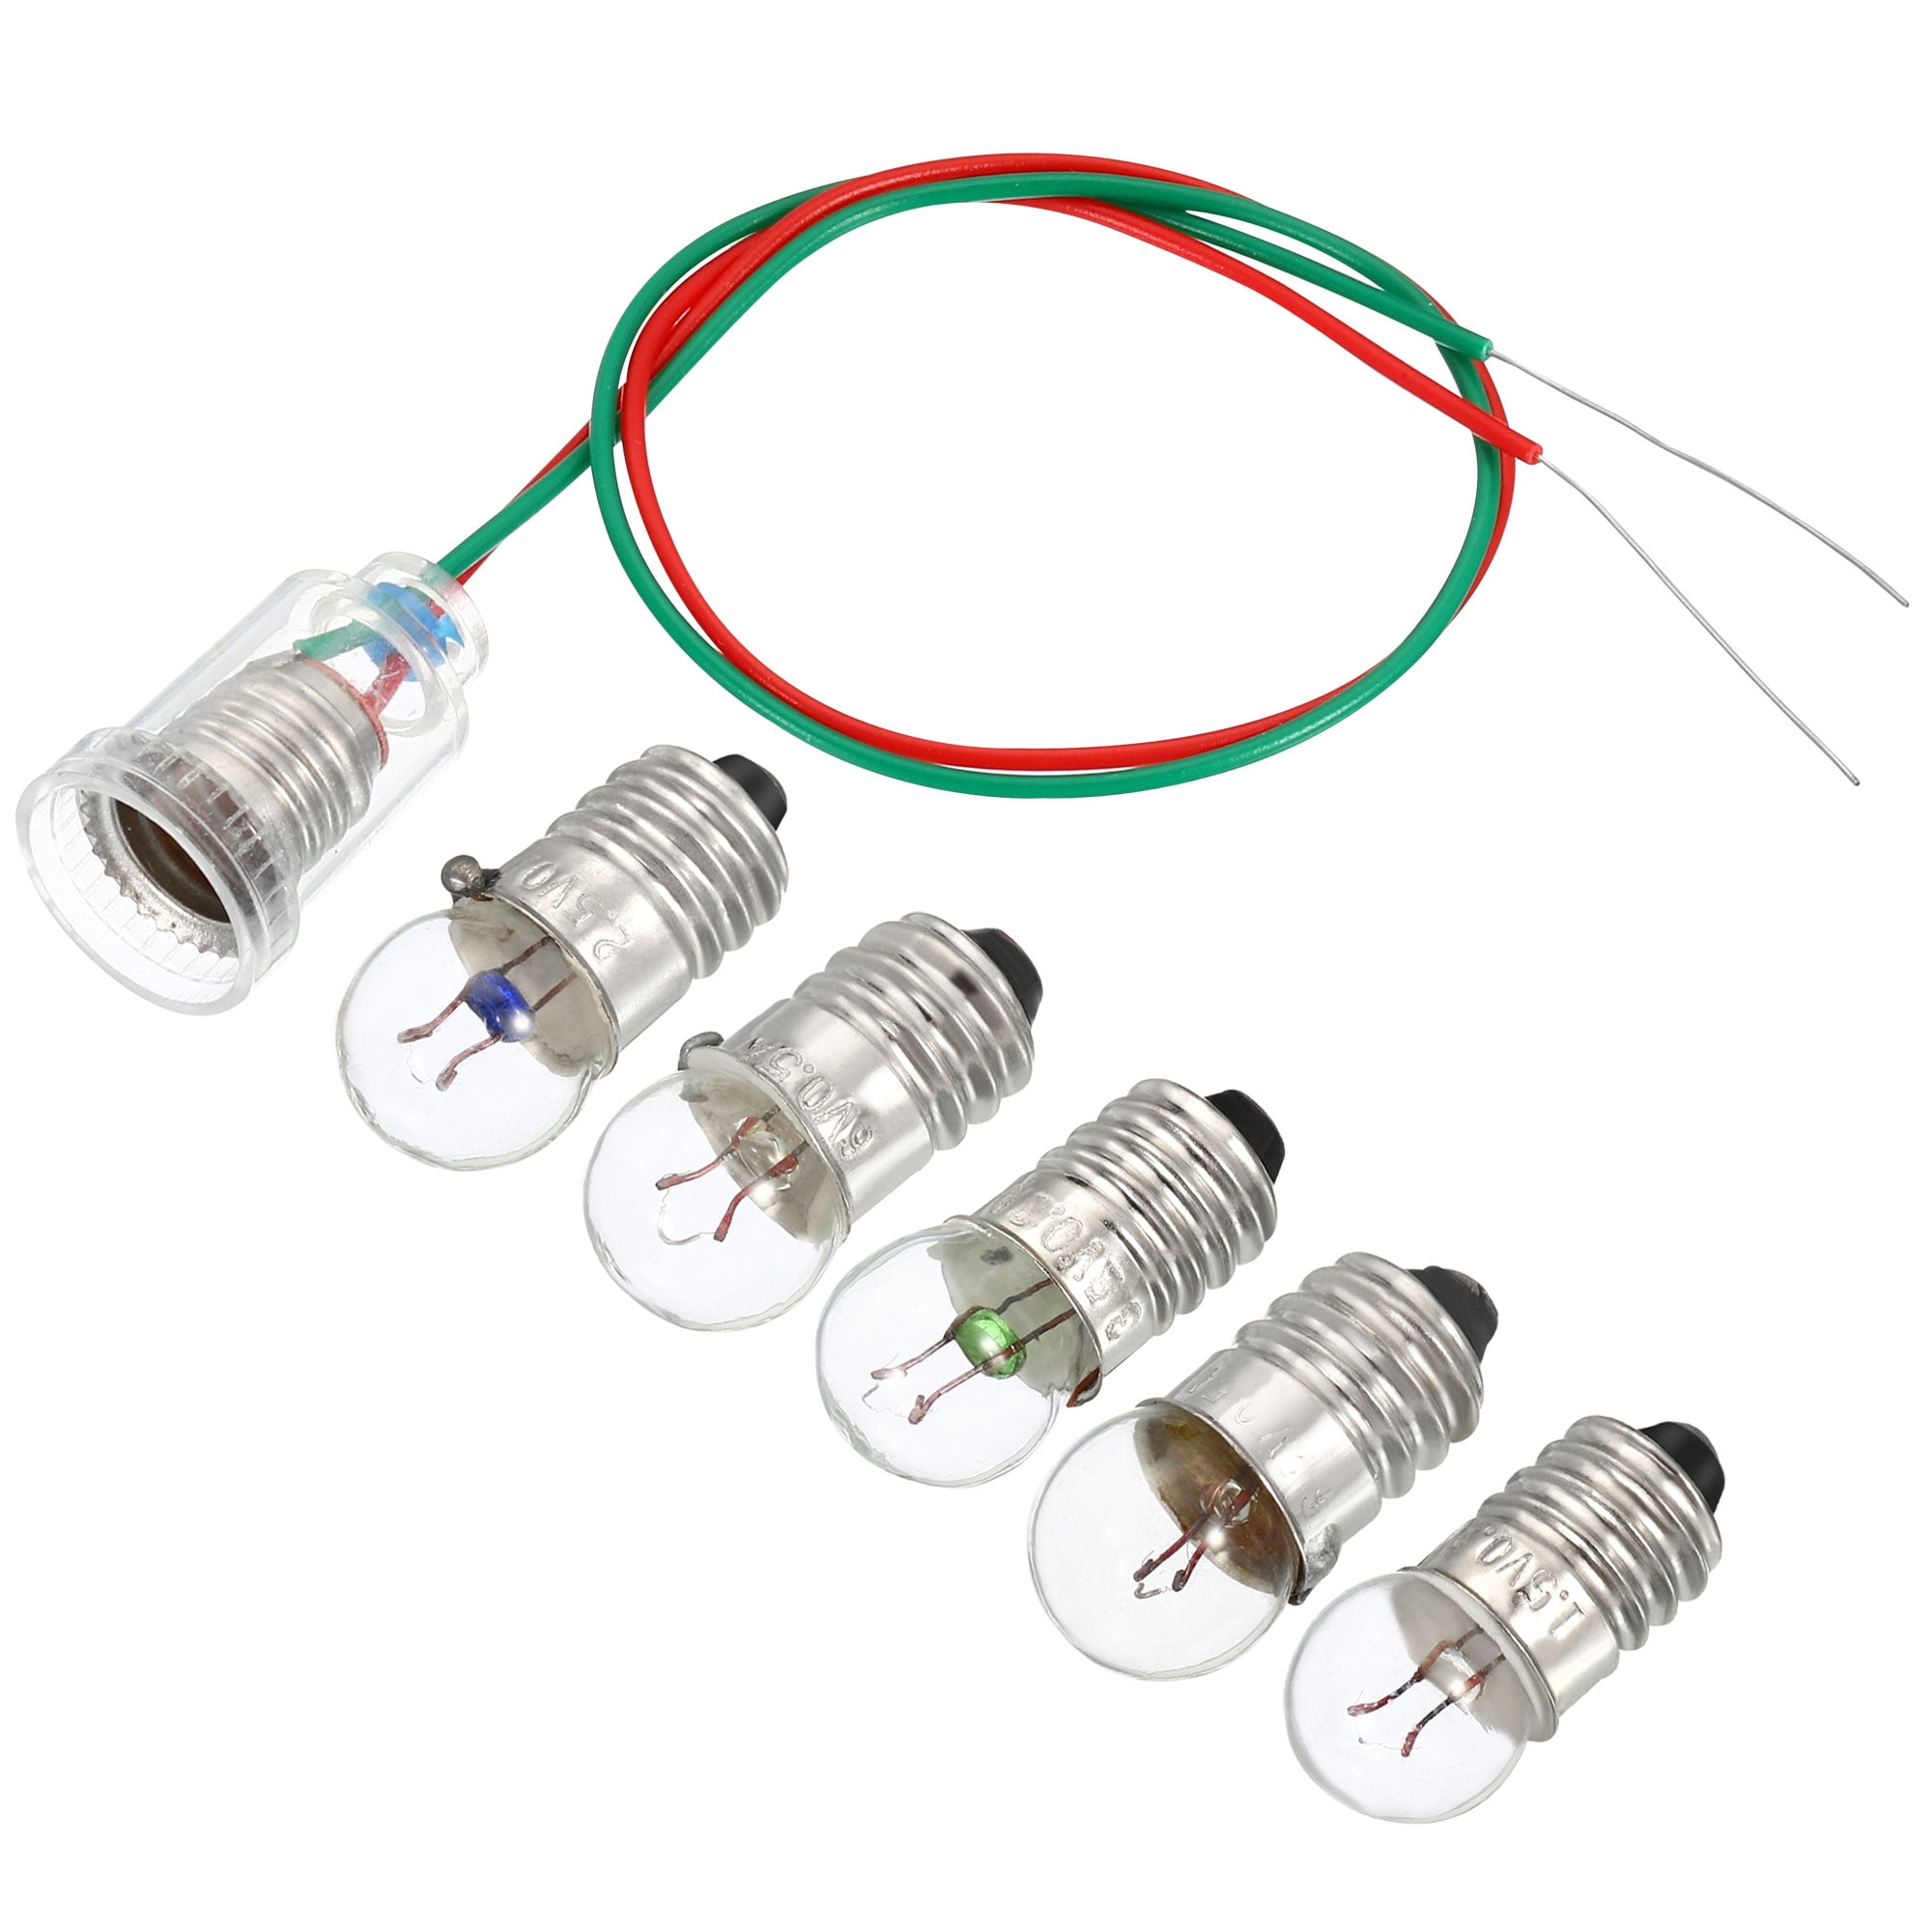 InputMakers - Lot de 10 pcs ampoule E10 de 3,8 V 0,3 A et 10 pcs